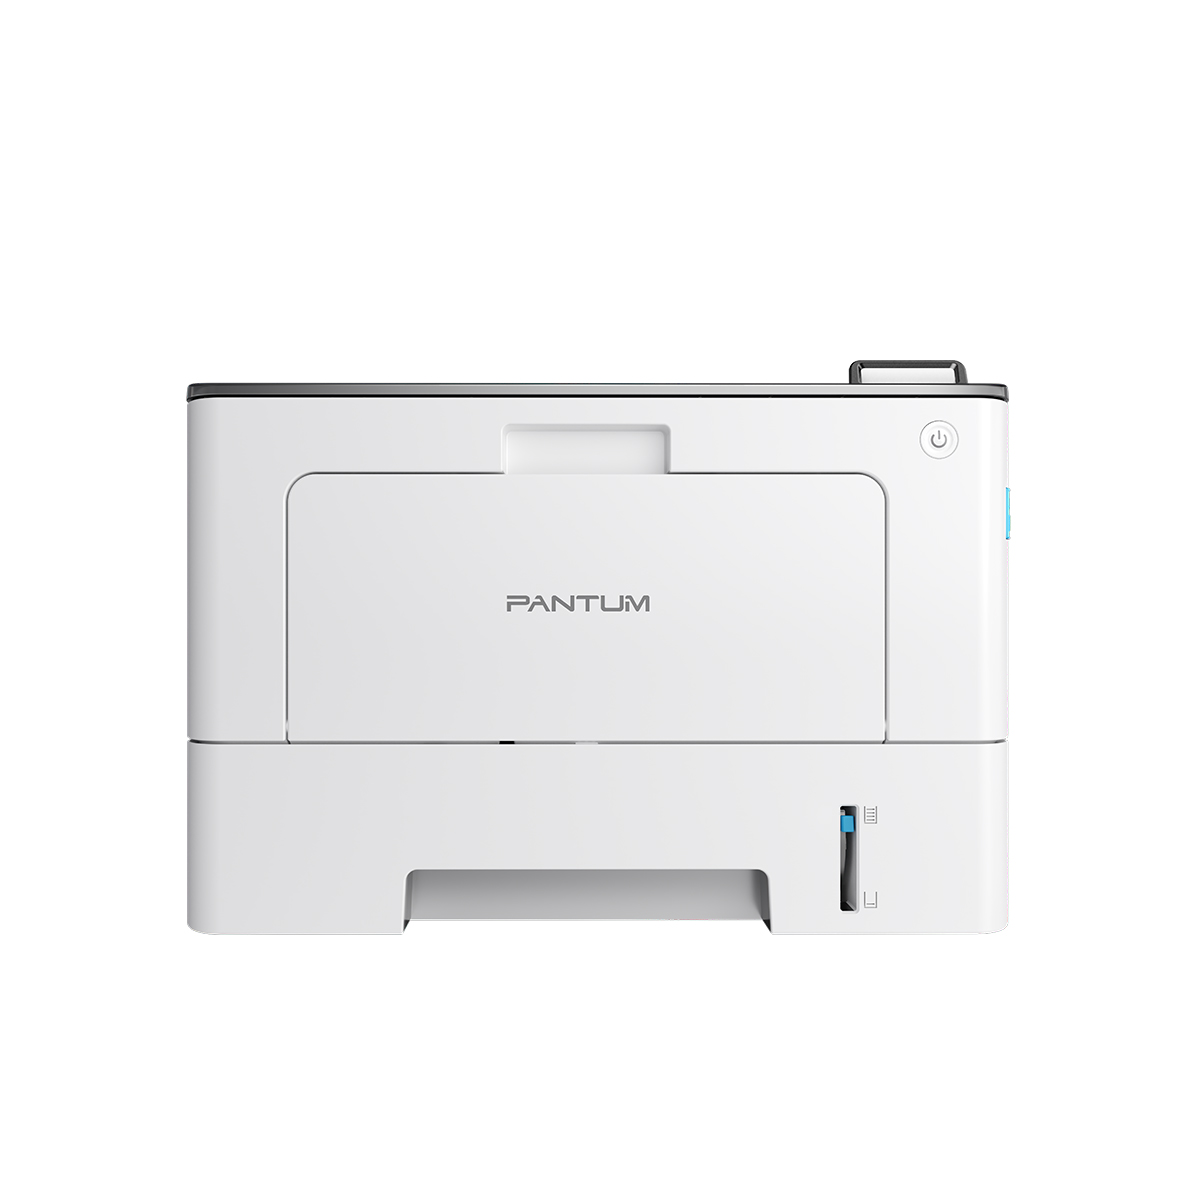 PANTUM BP5100DW melnbalts lāzerprinteris ar 40 lapu minūtē drukas ātrumu un starta toneri 3000 izdrukām. Izdevīgs printeris.